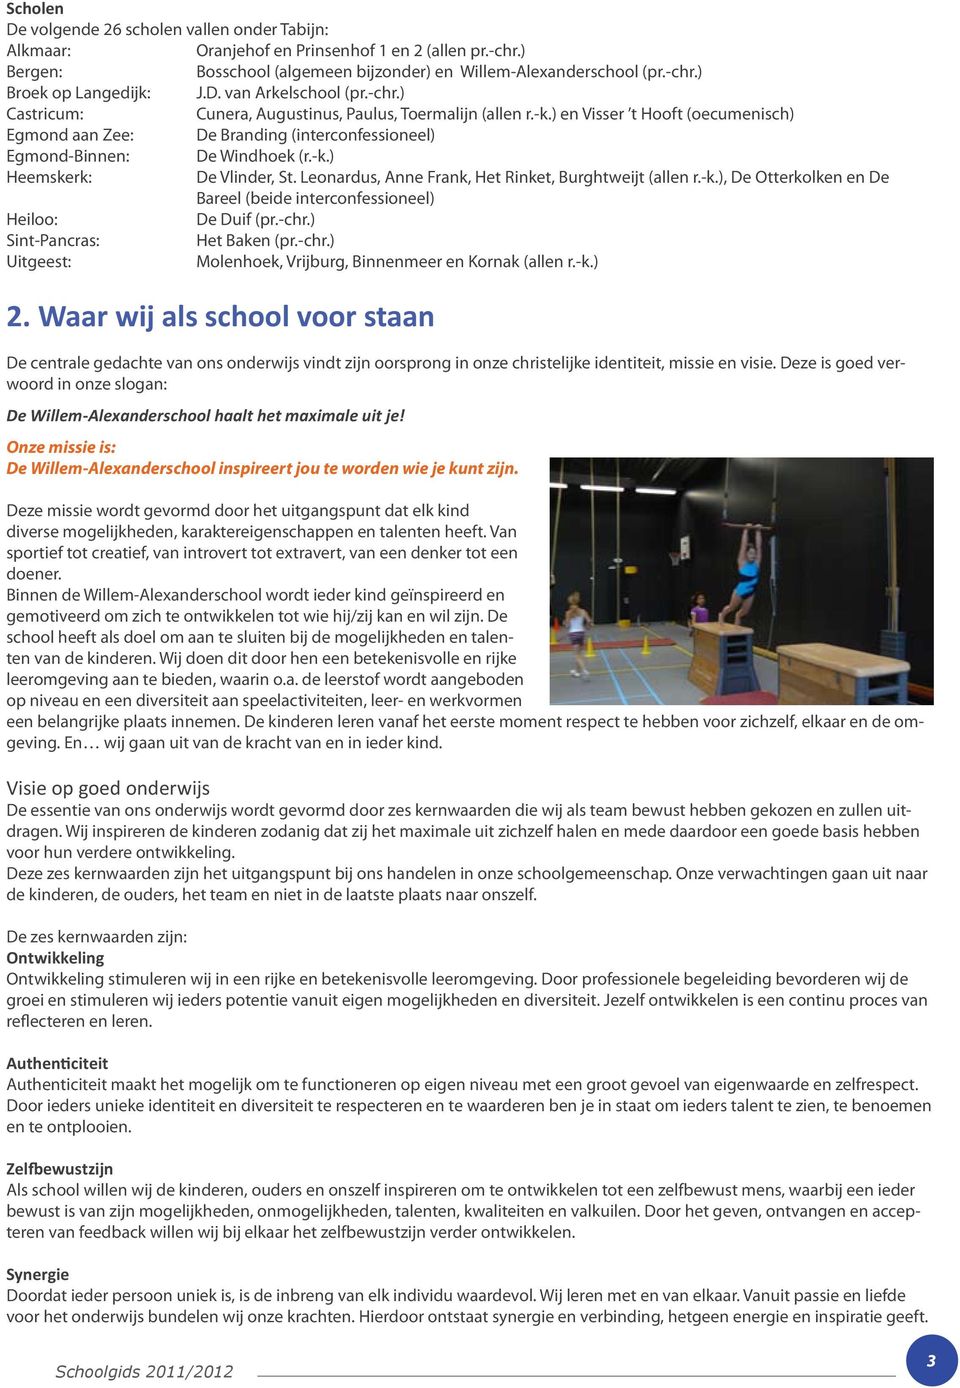 ) en Visser t Hooft (oecumenisch) Egmond aan Zee: De Branding (interconfessioneel) Egmond-Binnen: De Windhoek (r.-k.) Heemskerk: De Vlinder, St.